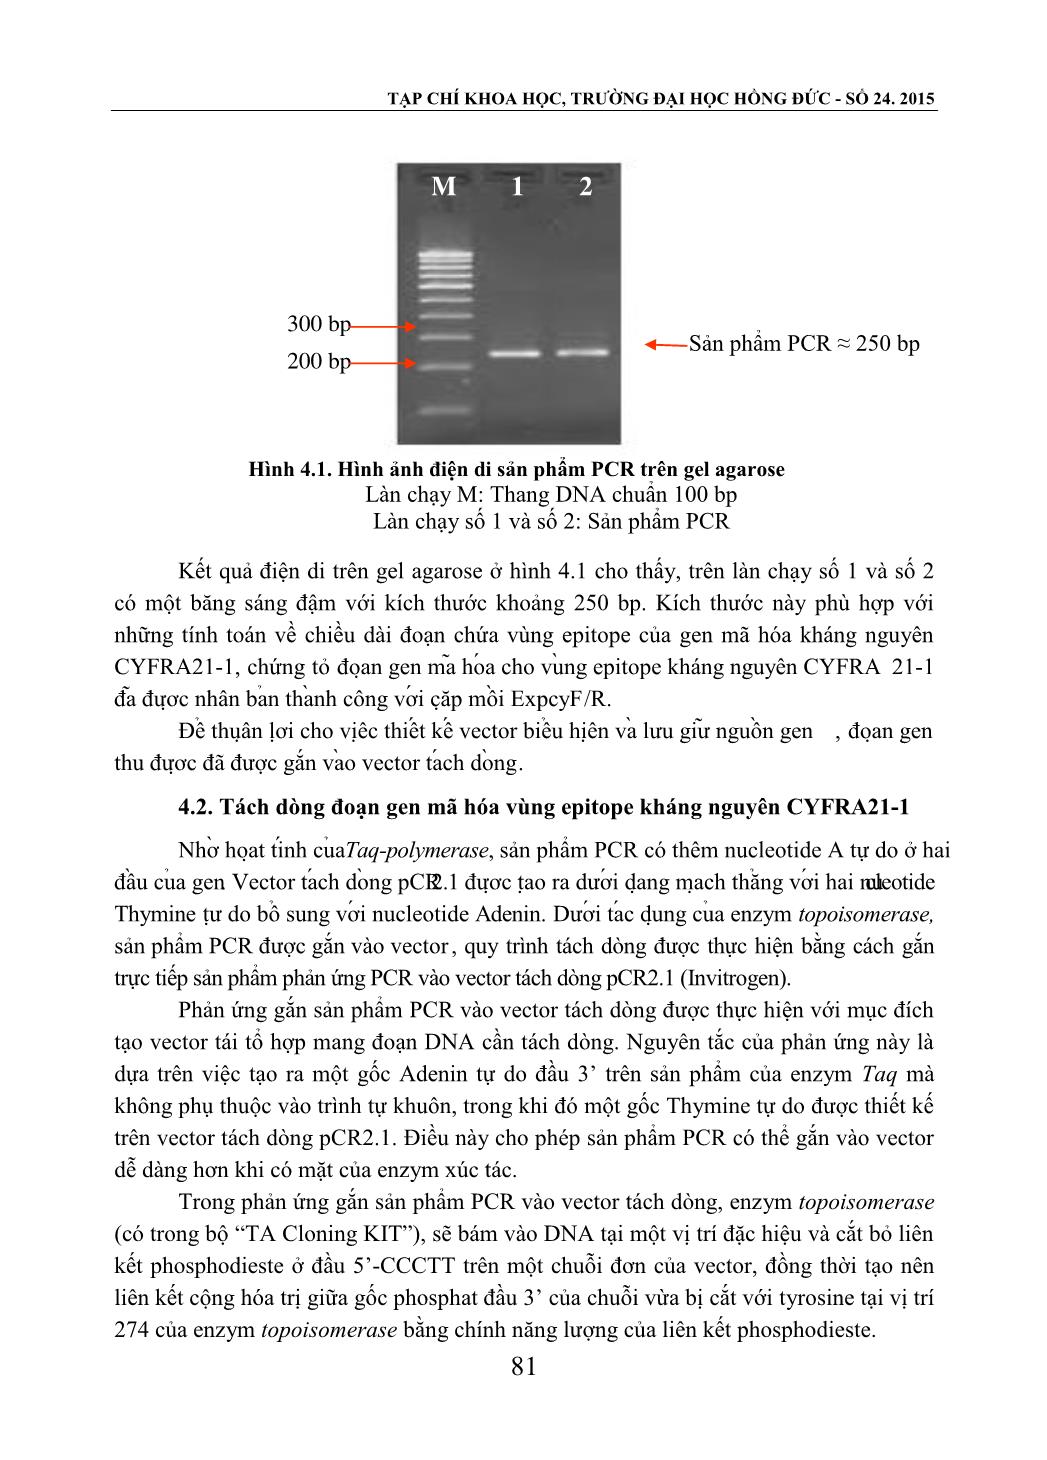 Kết quả nhân bản và xác định trình tự đoạn Epitope của gen mã hóa kháng nguyên Cyfra21-1 trang 5